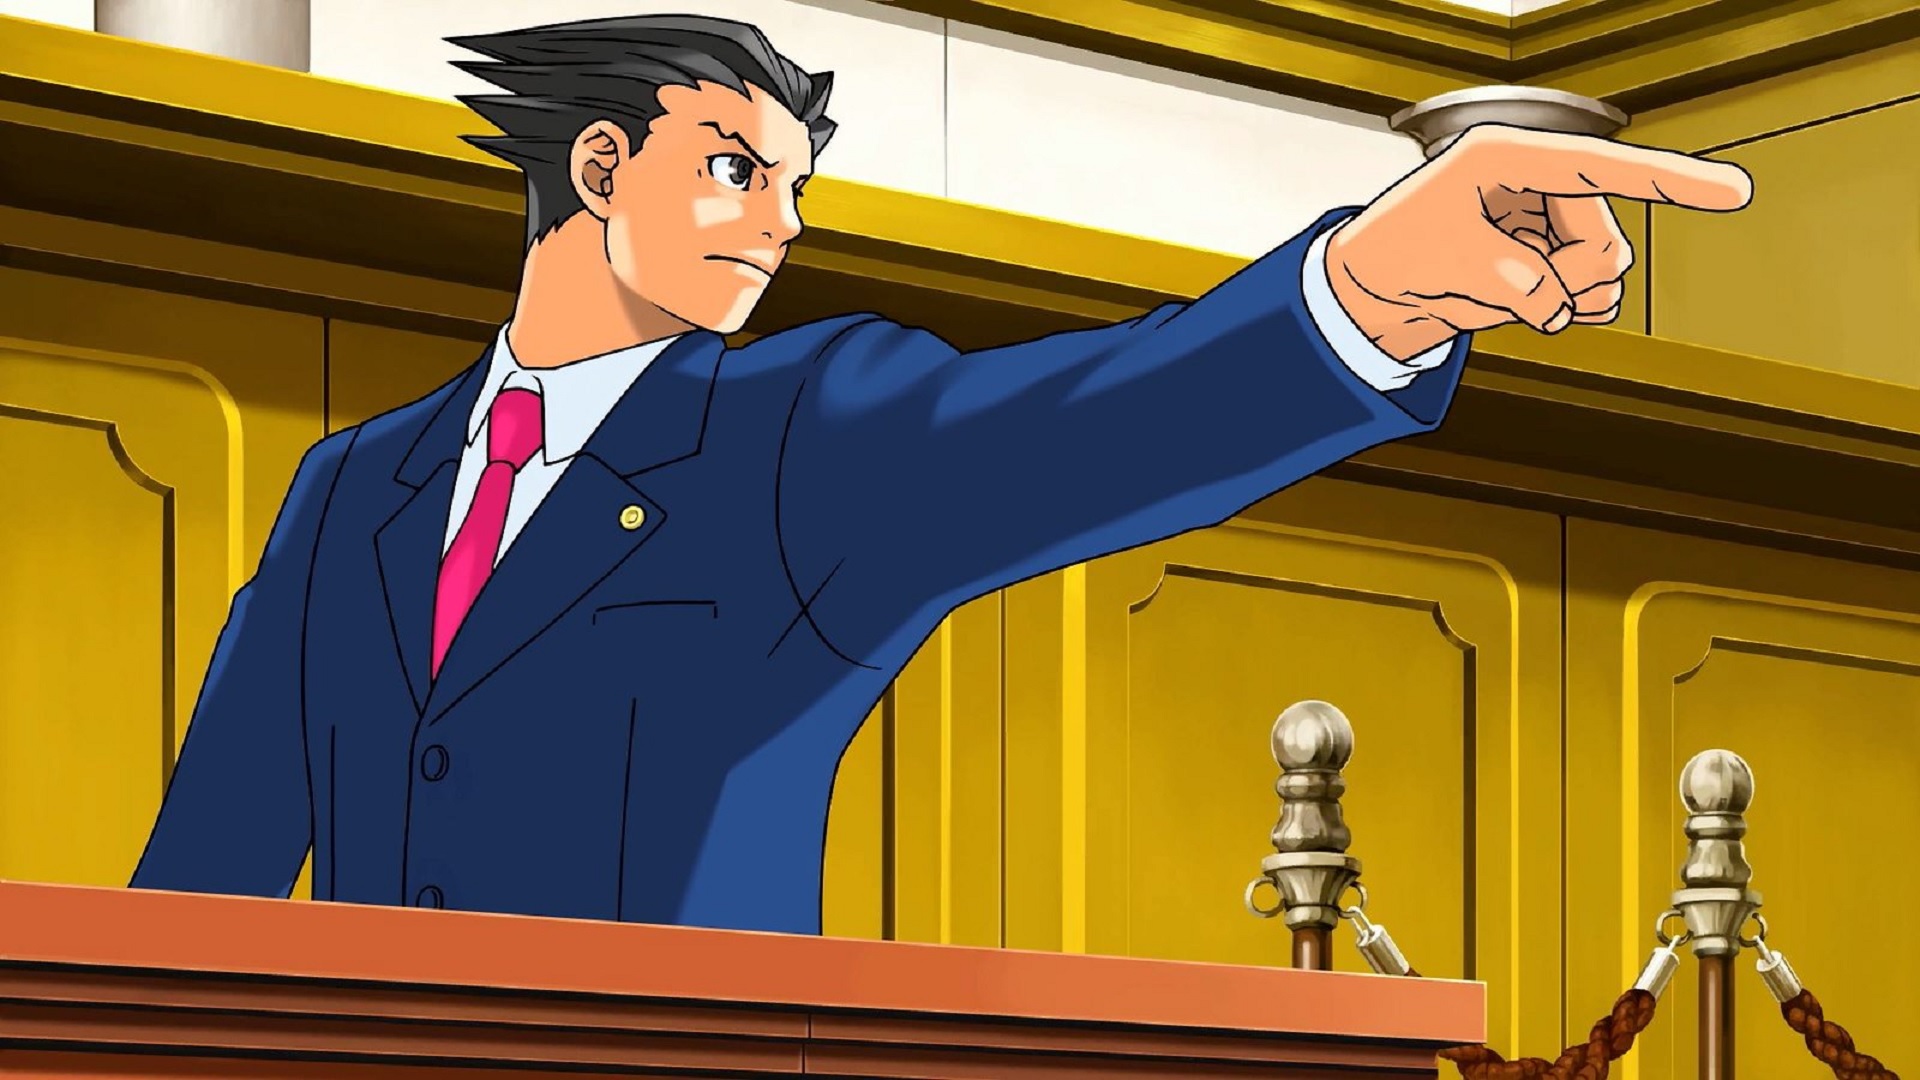 أفضل ألعاب أنيمي: فينيكس رايت: ثلاثية المحامي. تظهر الصورة فينيكس نفسه يشير عبر قاعة المحكمة